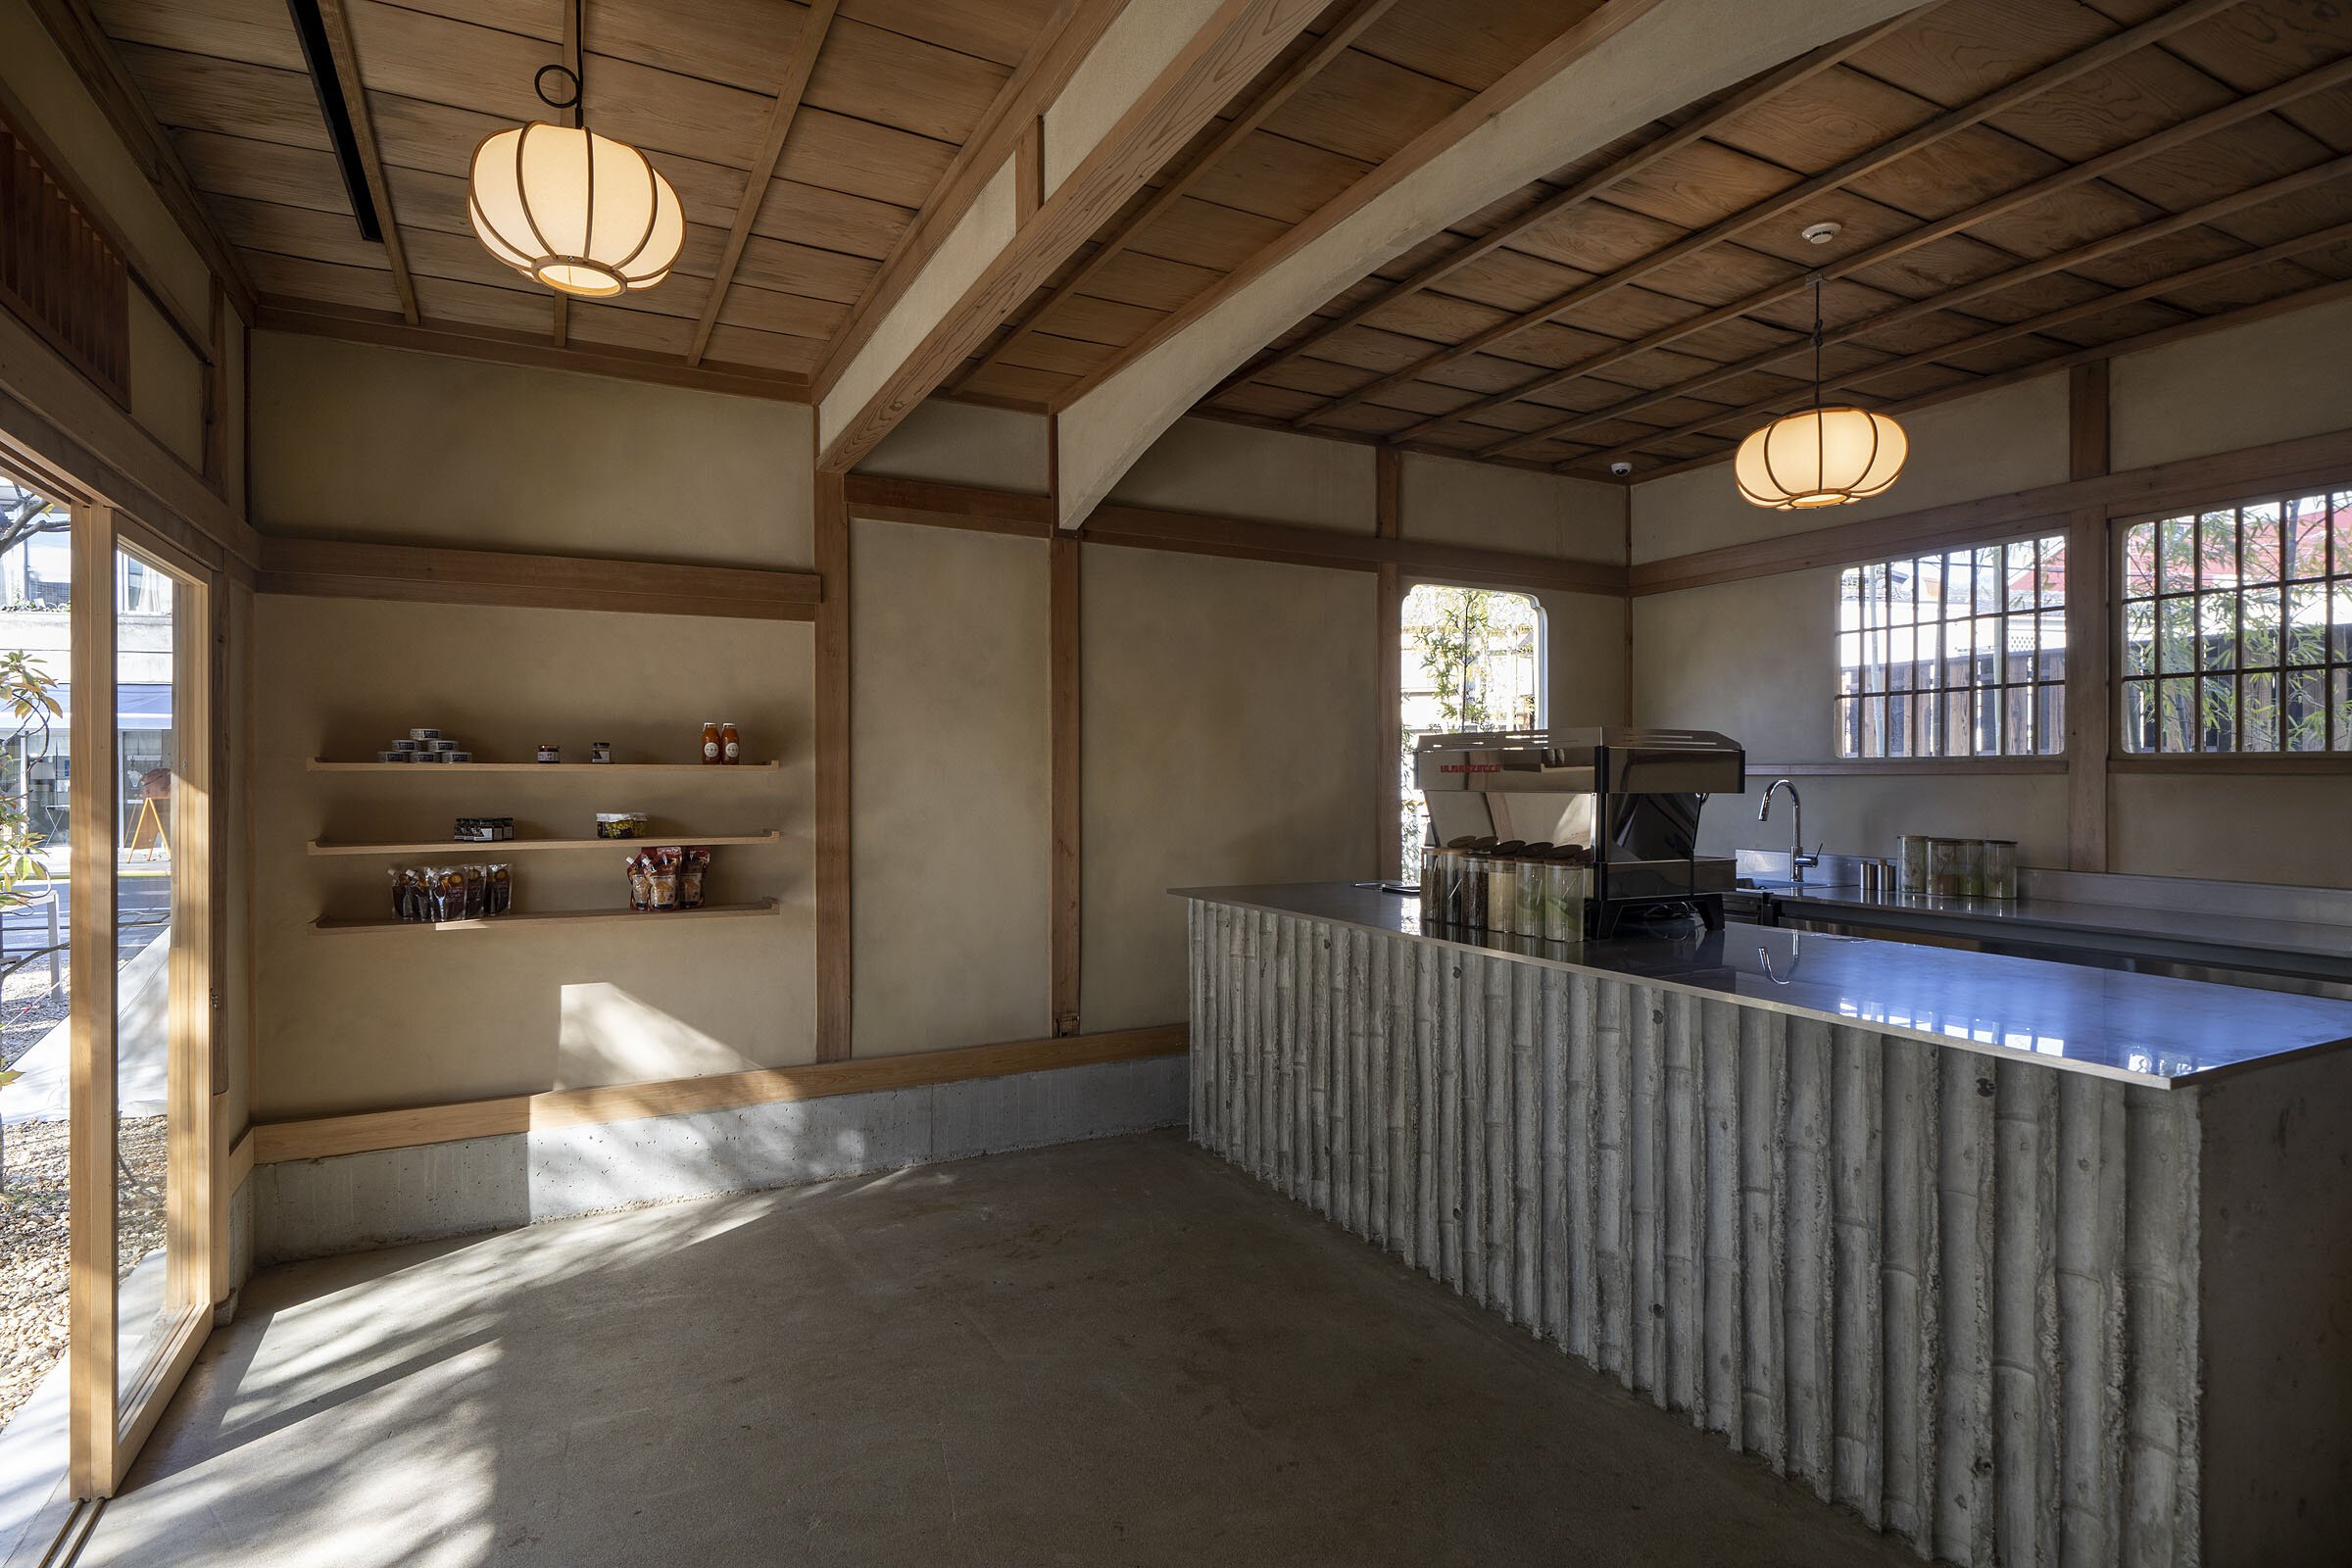  cafe co.の森井良幸がデザインしたスノーピークランドステーション京都嵐山のカフェエリア 